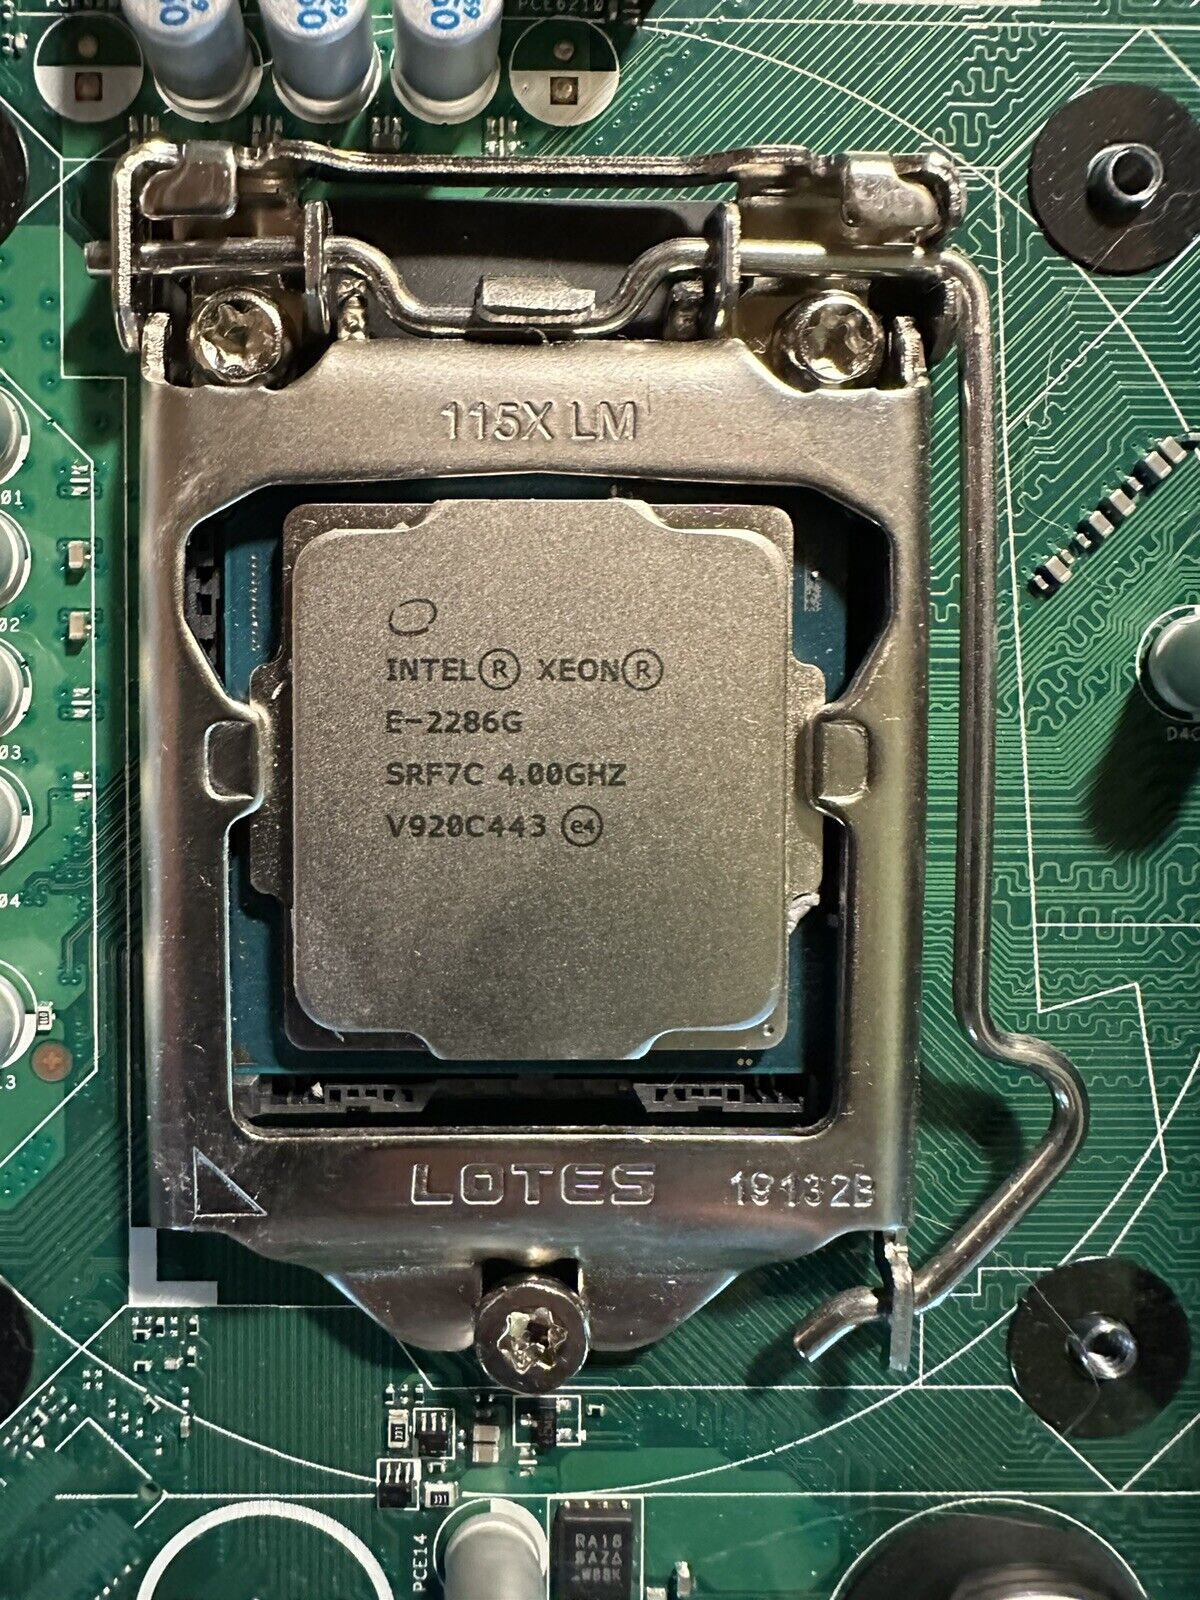 Intel Xeon E-2286G 4GHz 6-Core FCLGA1151 CPU Processor (SRF7C)